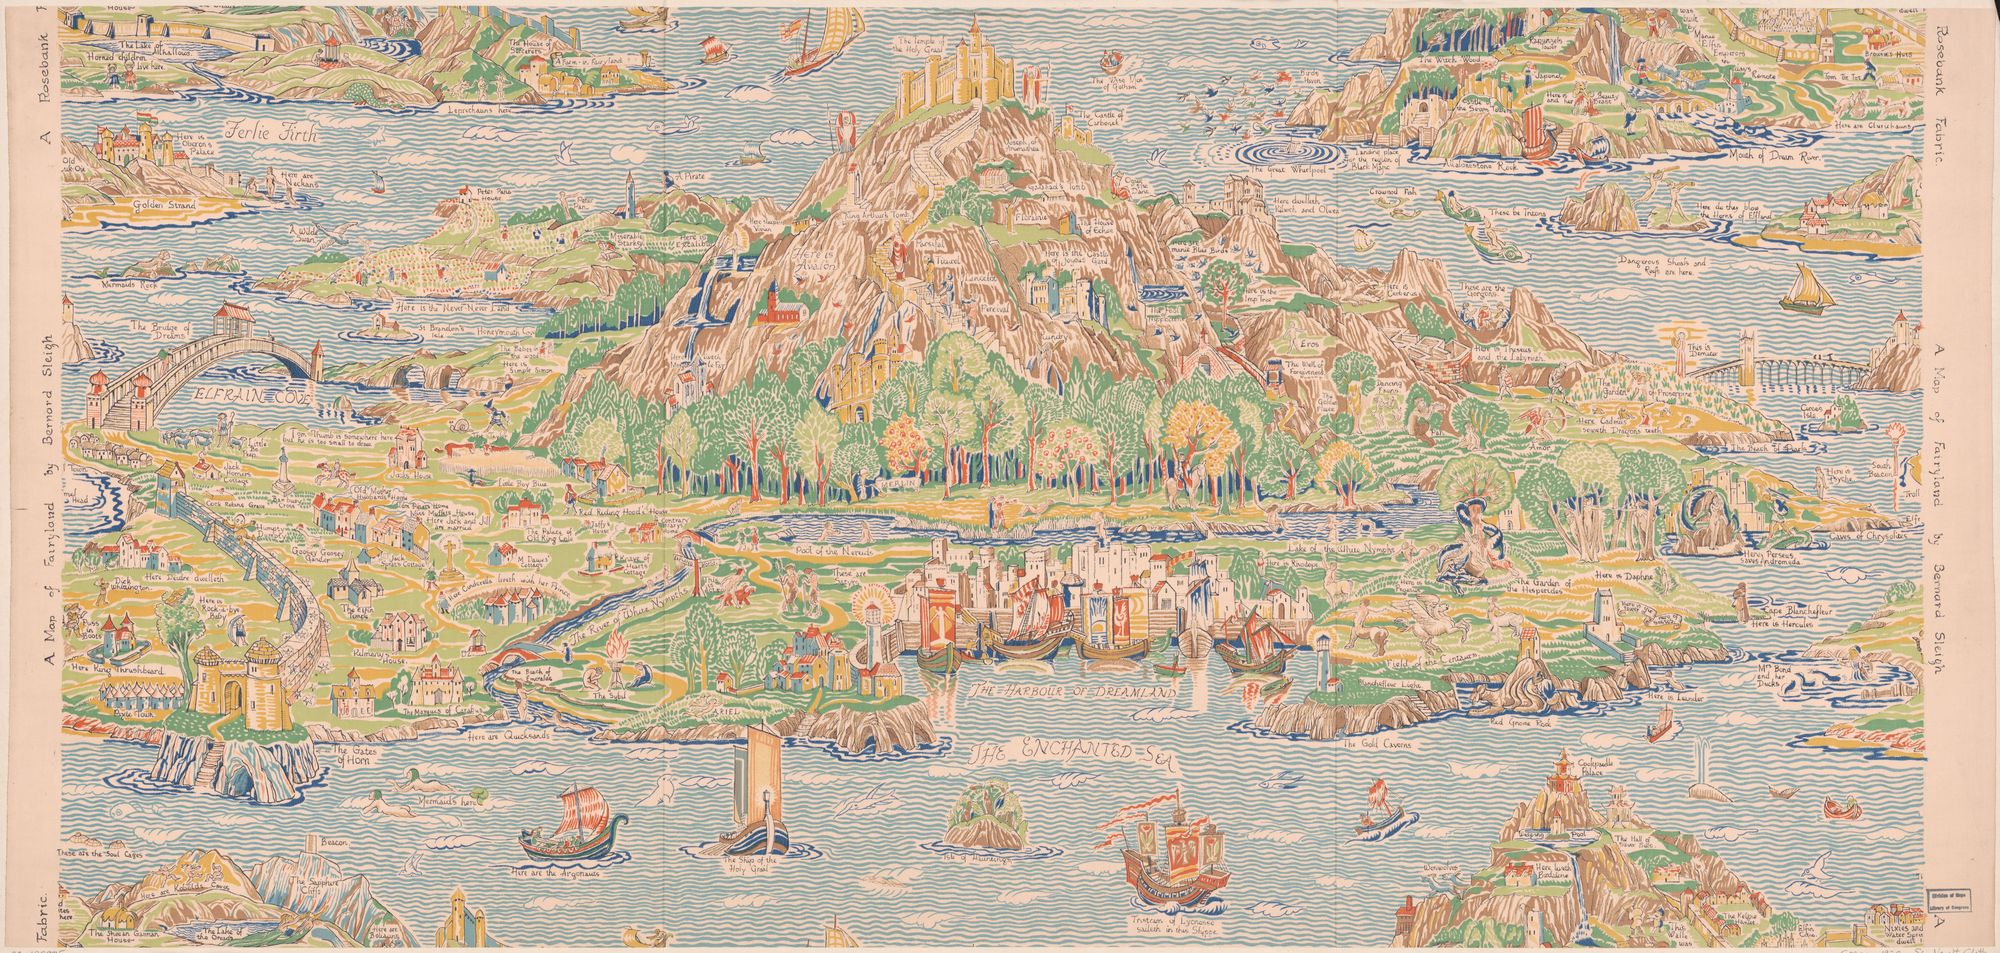 A map of Fairyland by Bernard Sleigh. Cloth map. "A Rosebank fabric". England, 1920